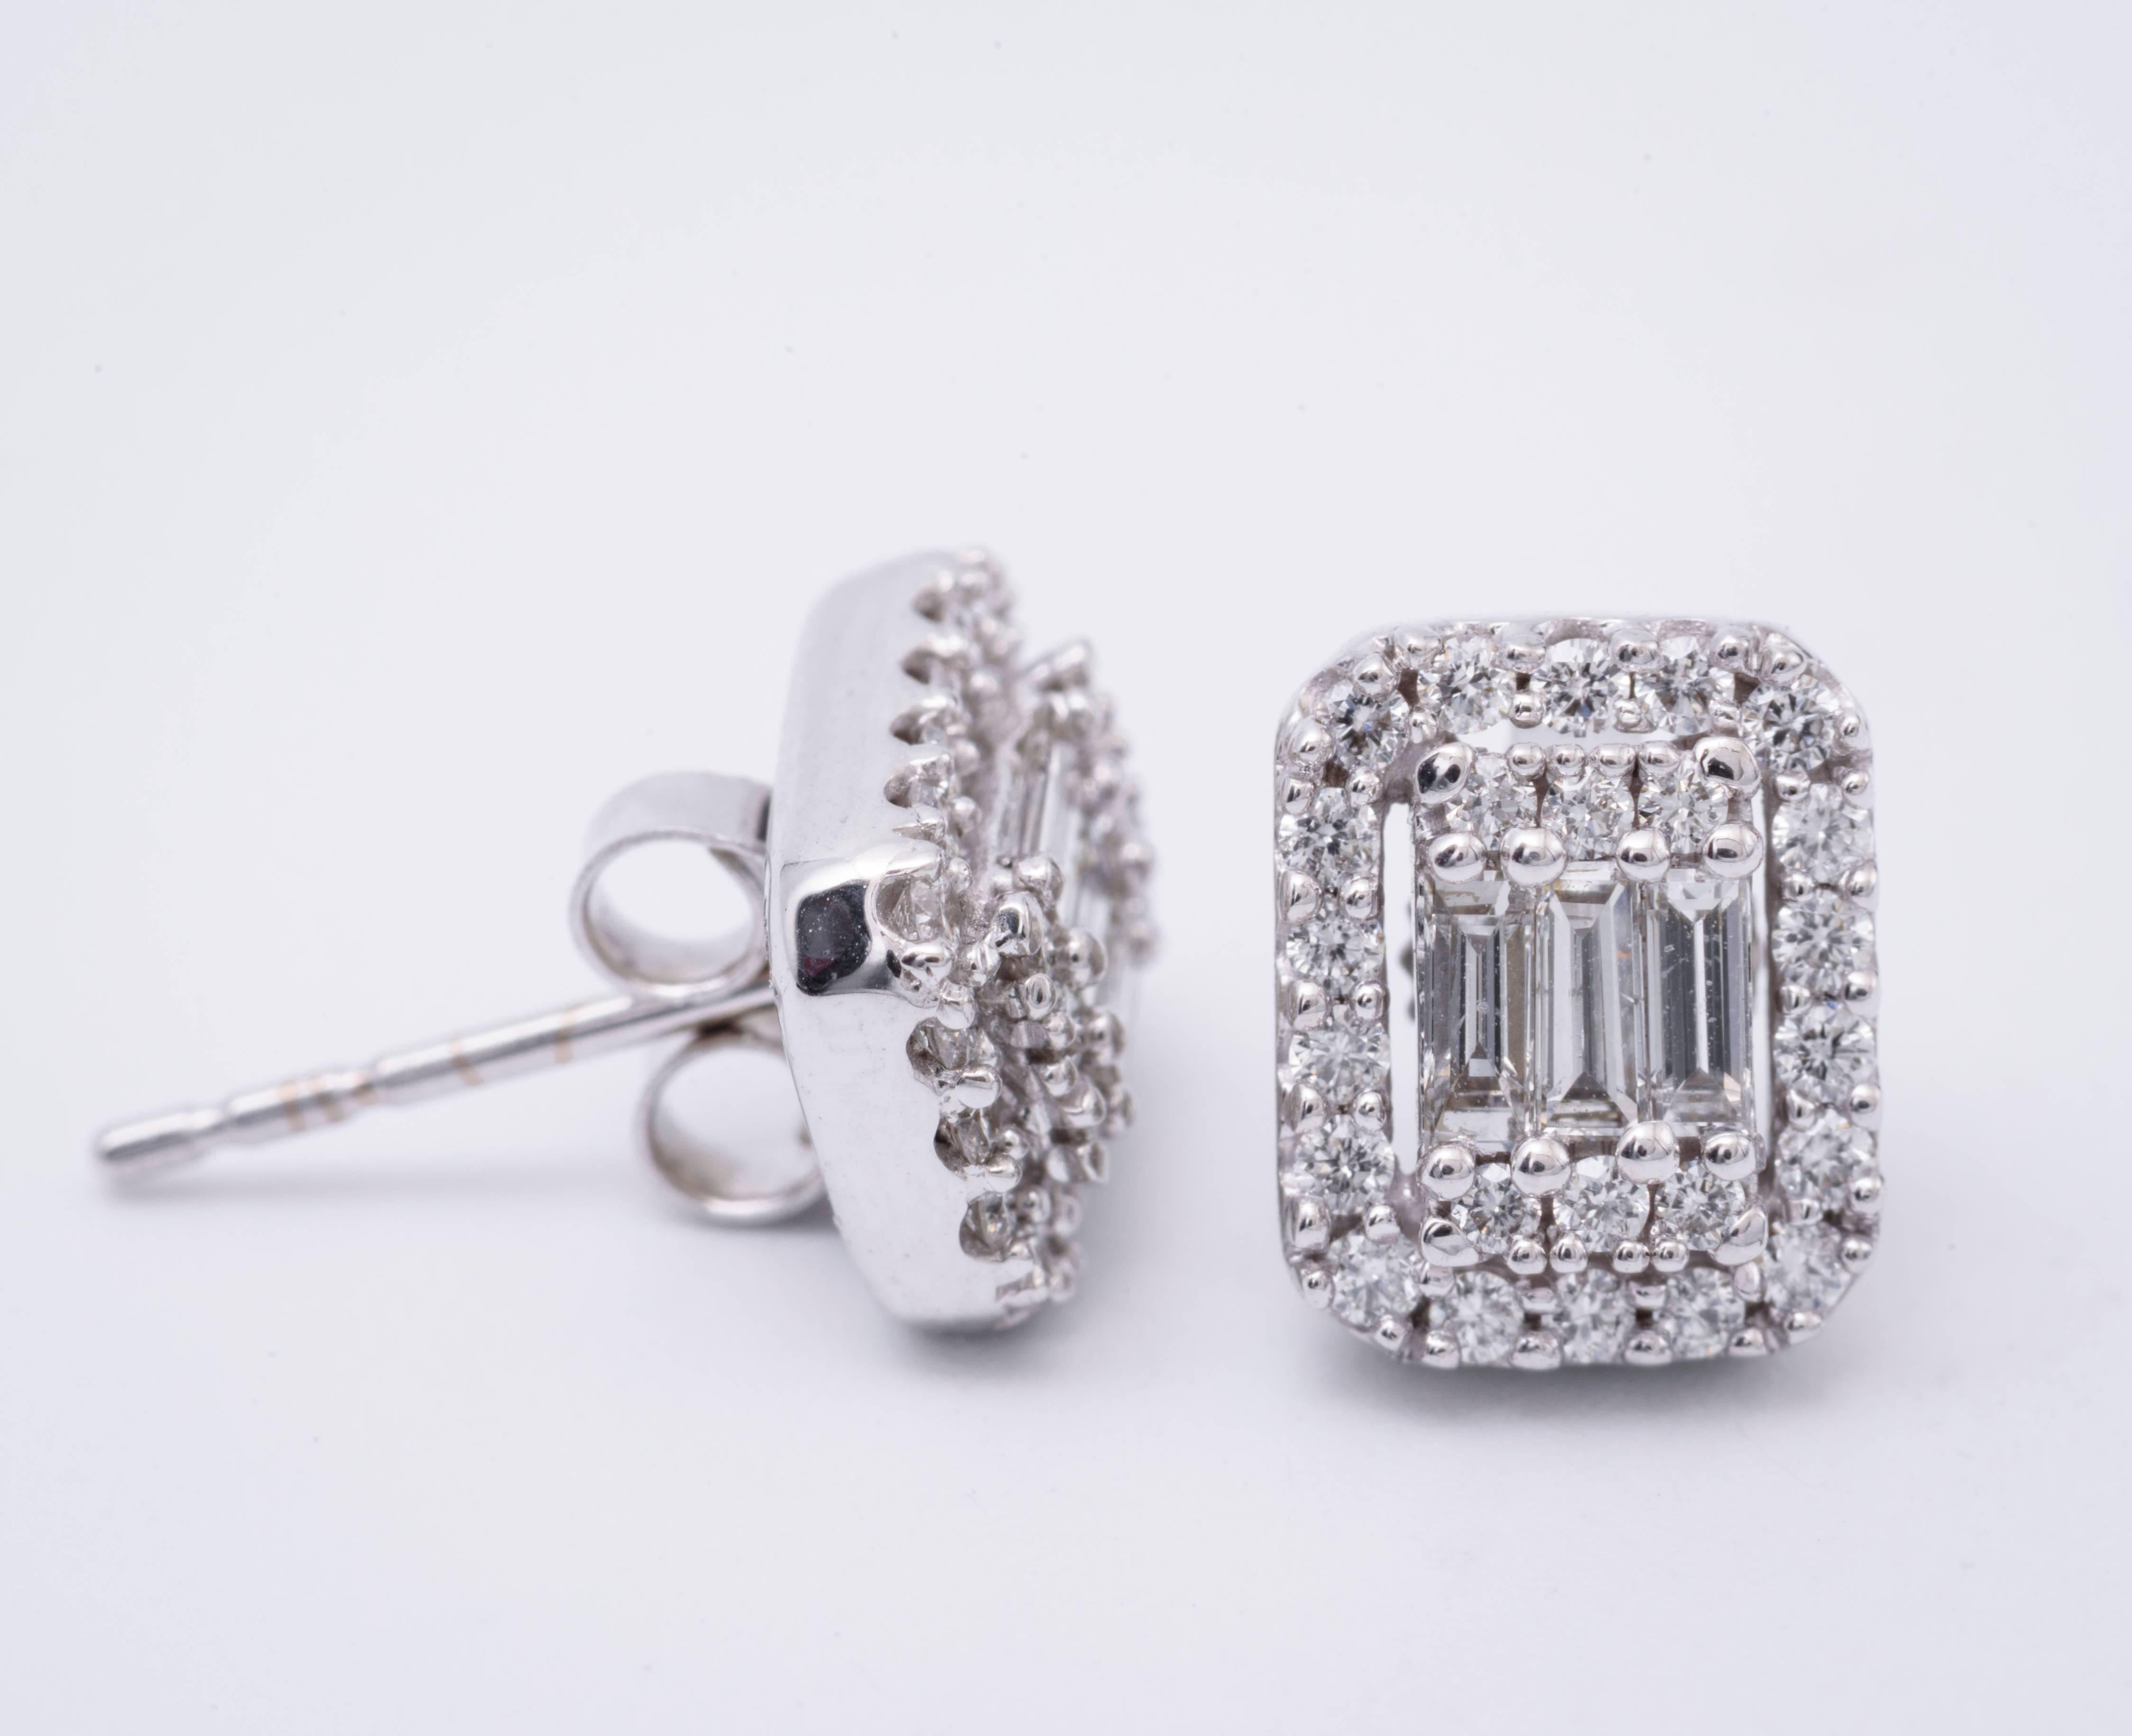 14K Diamond studs earrings 
Diamond weight: 0.63 Cts.
Earrings measuring: 9 x 7 mm